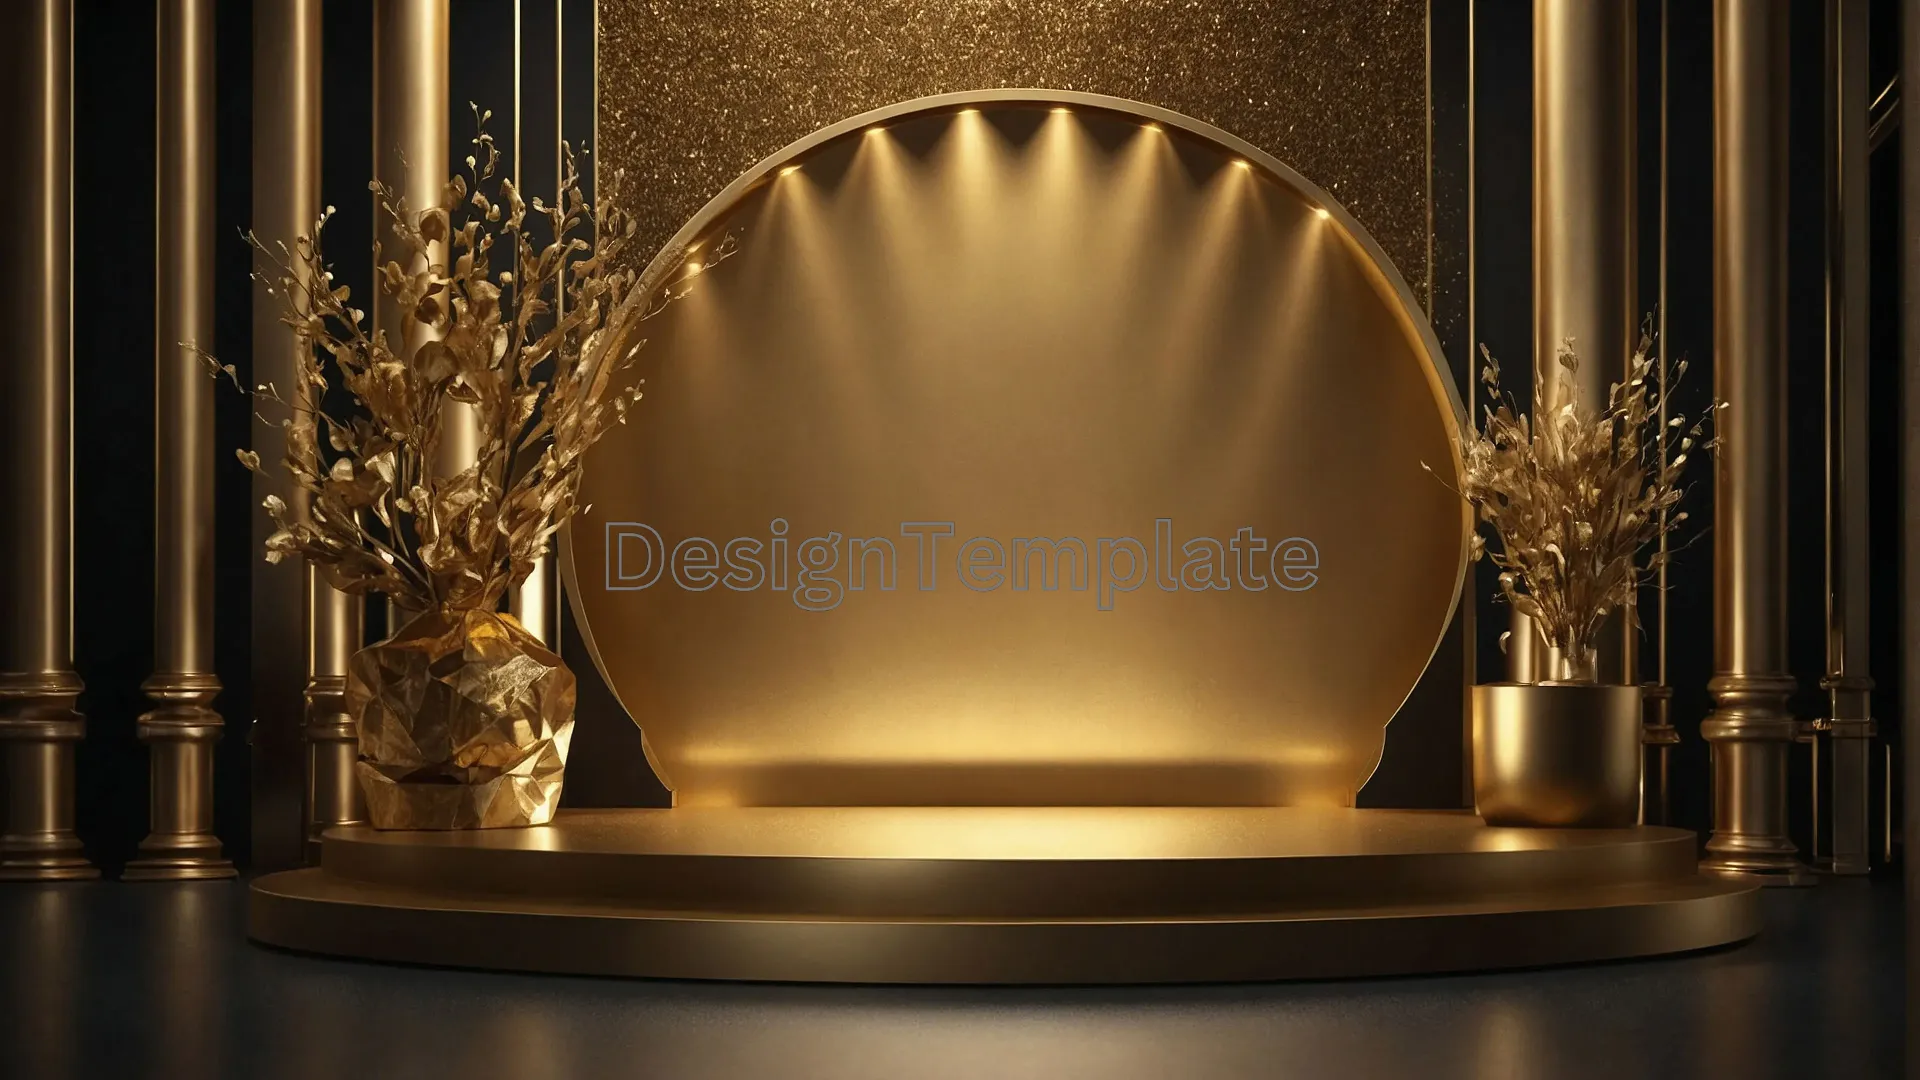 Award Show Podium with Elegant Golden Background Image